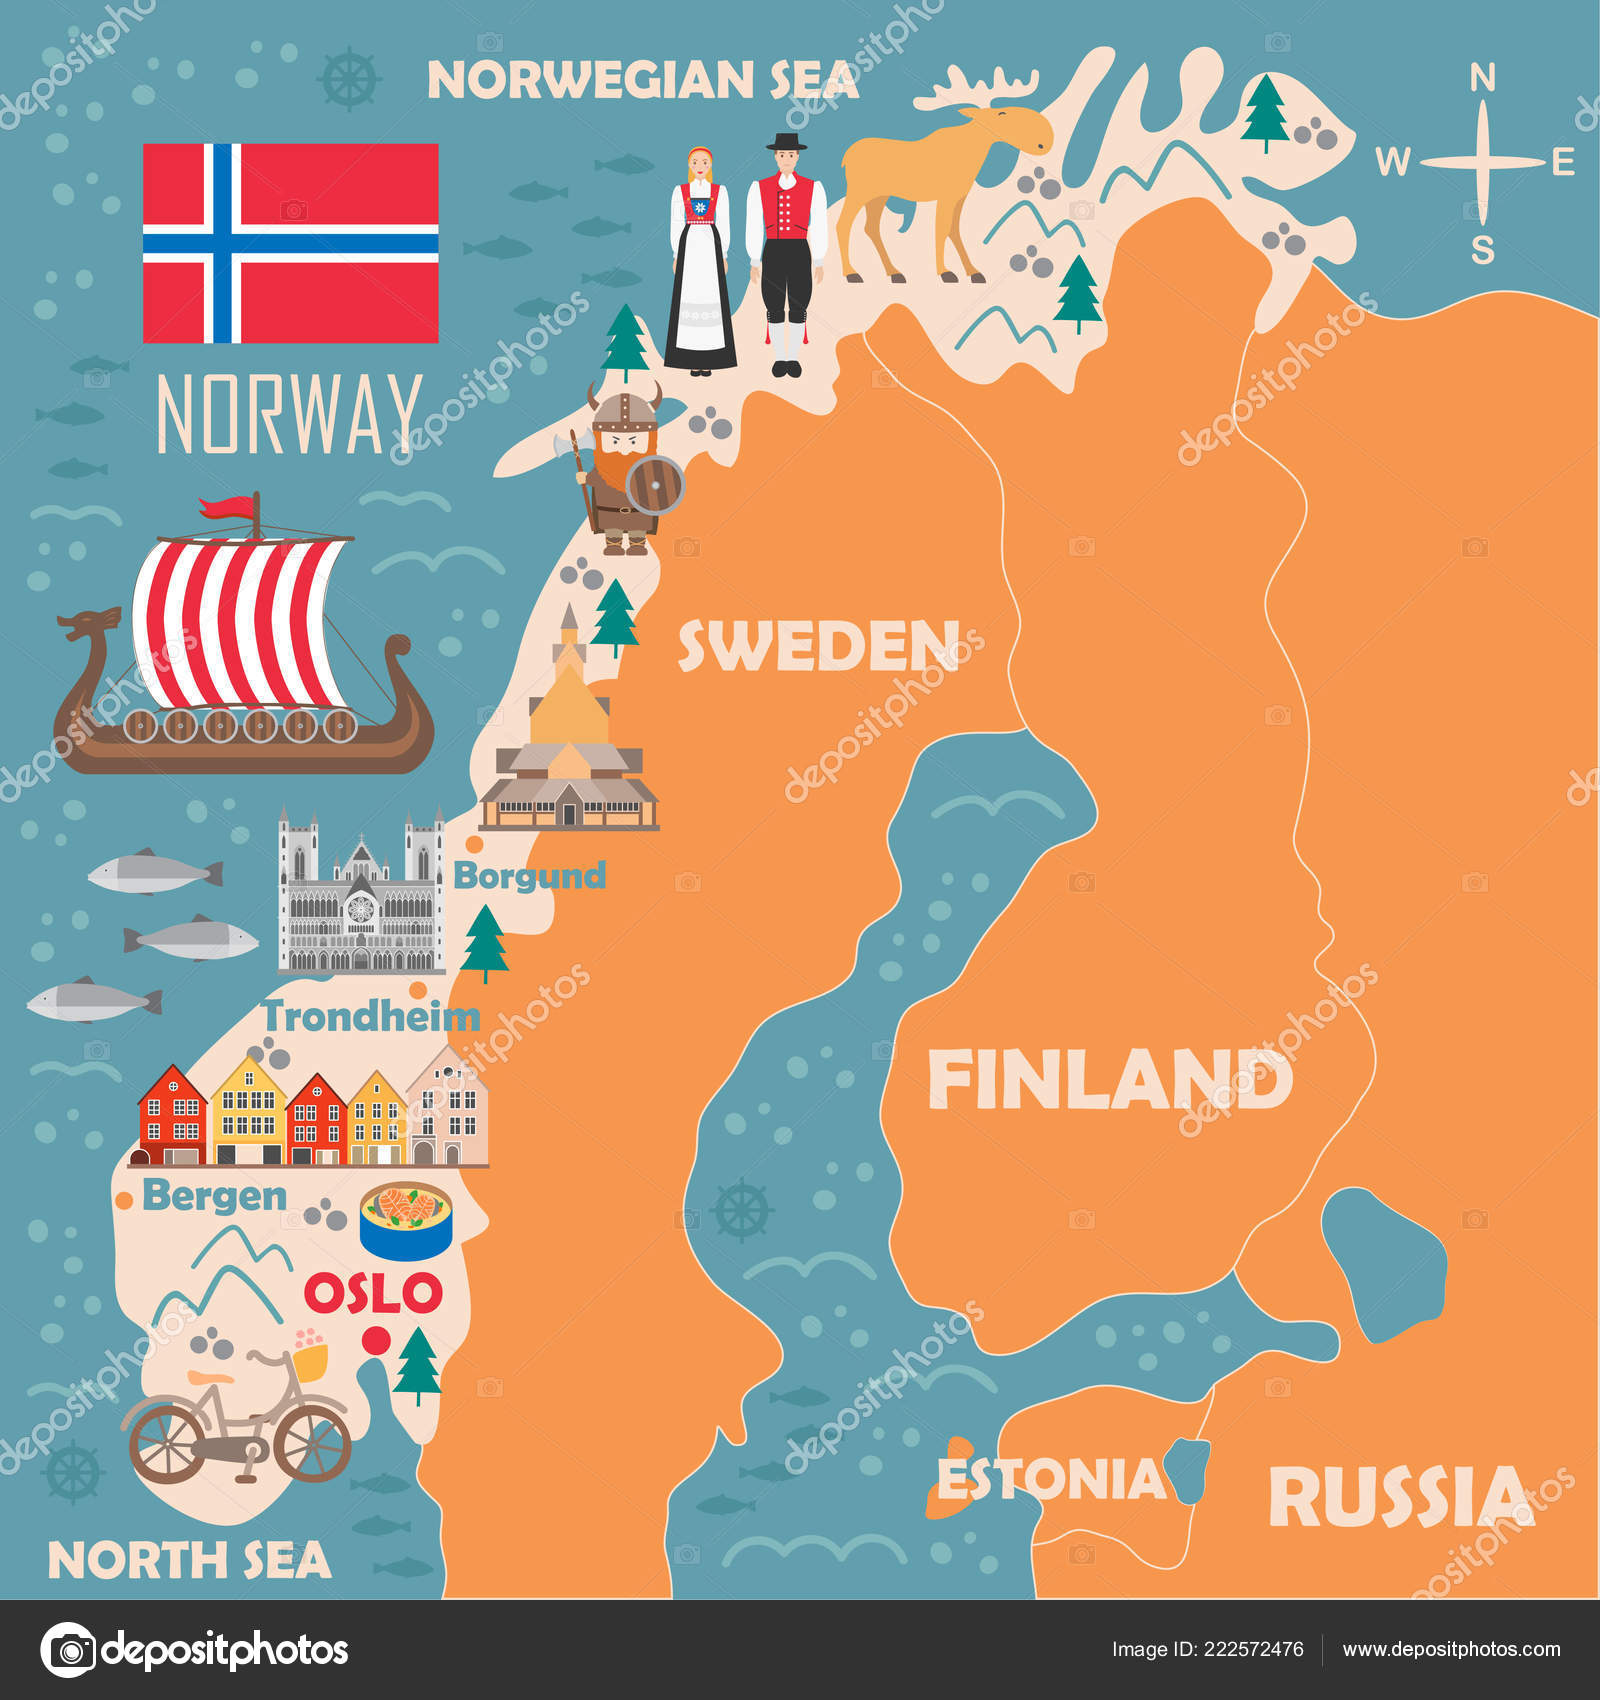 Sevärdheter Norge Karta | hypocriteunicorn